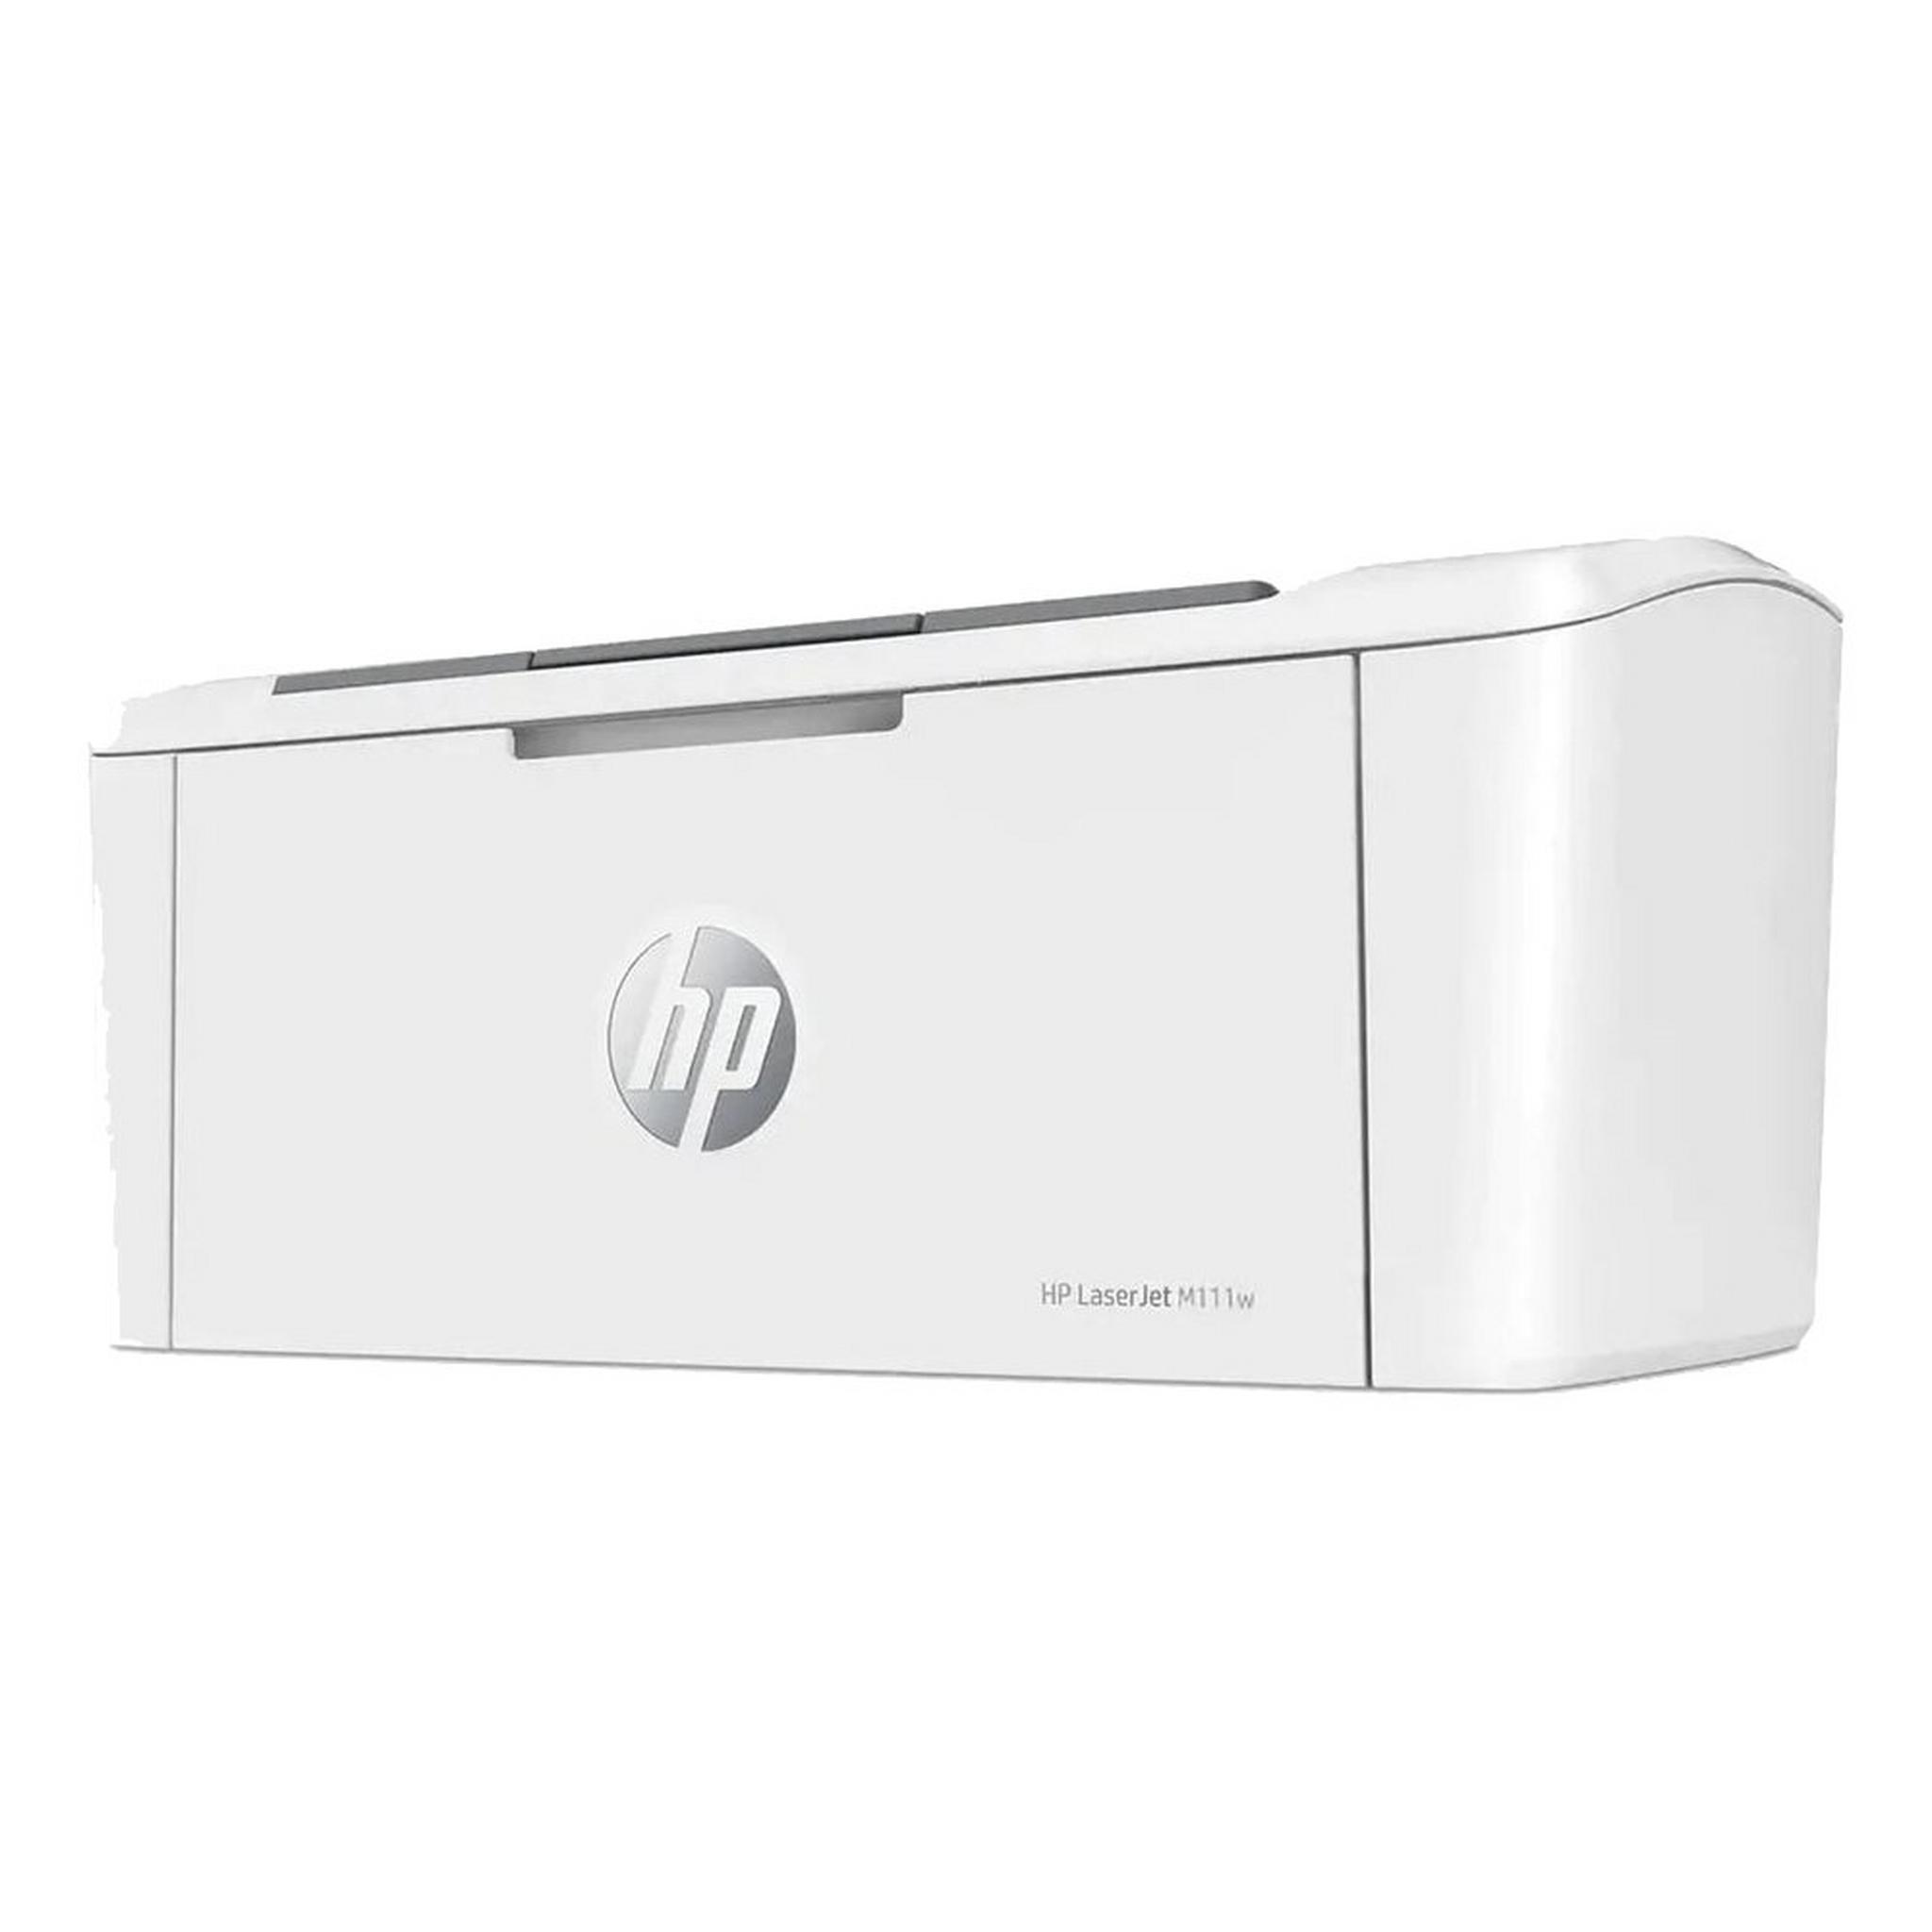 HP LaserJet M111w Mono Printer (7MD68A)